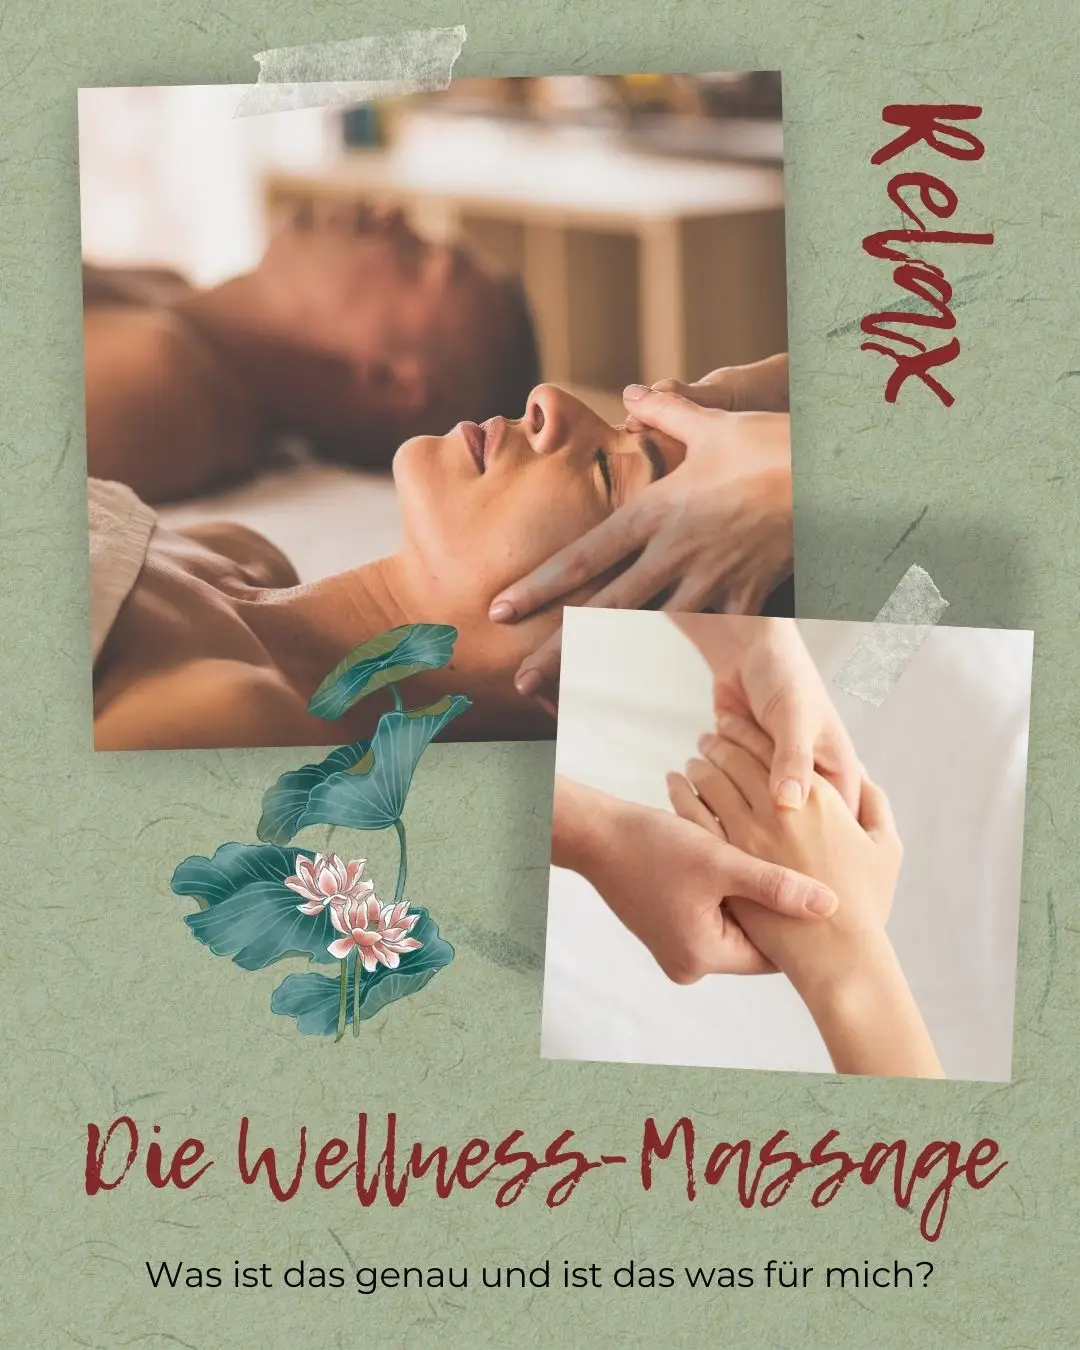 Die Wellness-Massage | Massage Unterhaching | Massage Nähe Unterhaching | Ganzkörpermassage | Teilkörpermassage | Rückenmassage | Fußreflexmassage | Fußreflexzonenmassage | Wellness-Anwendung | Wellness Unterhaching | Massage gegen Stress